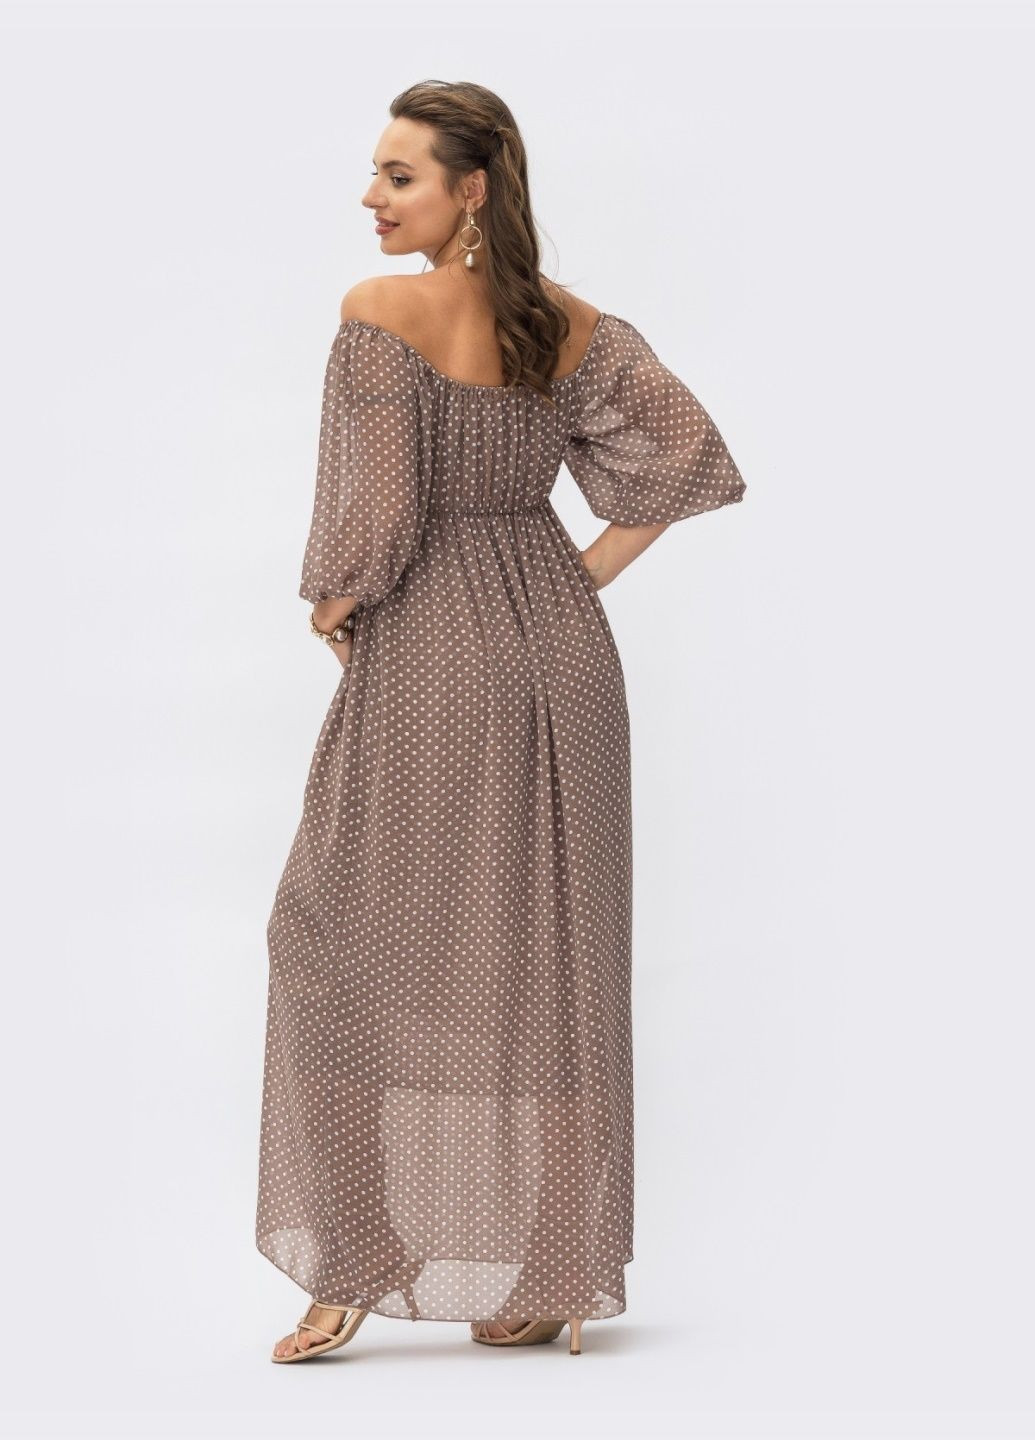 Коричневое шифоновое платье-макси в горох с завышенной талией коричневое Dressa